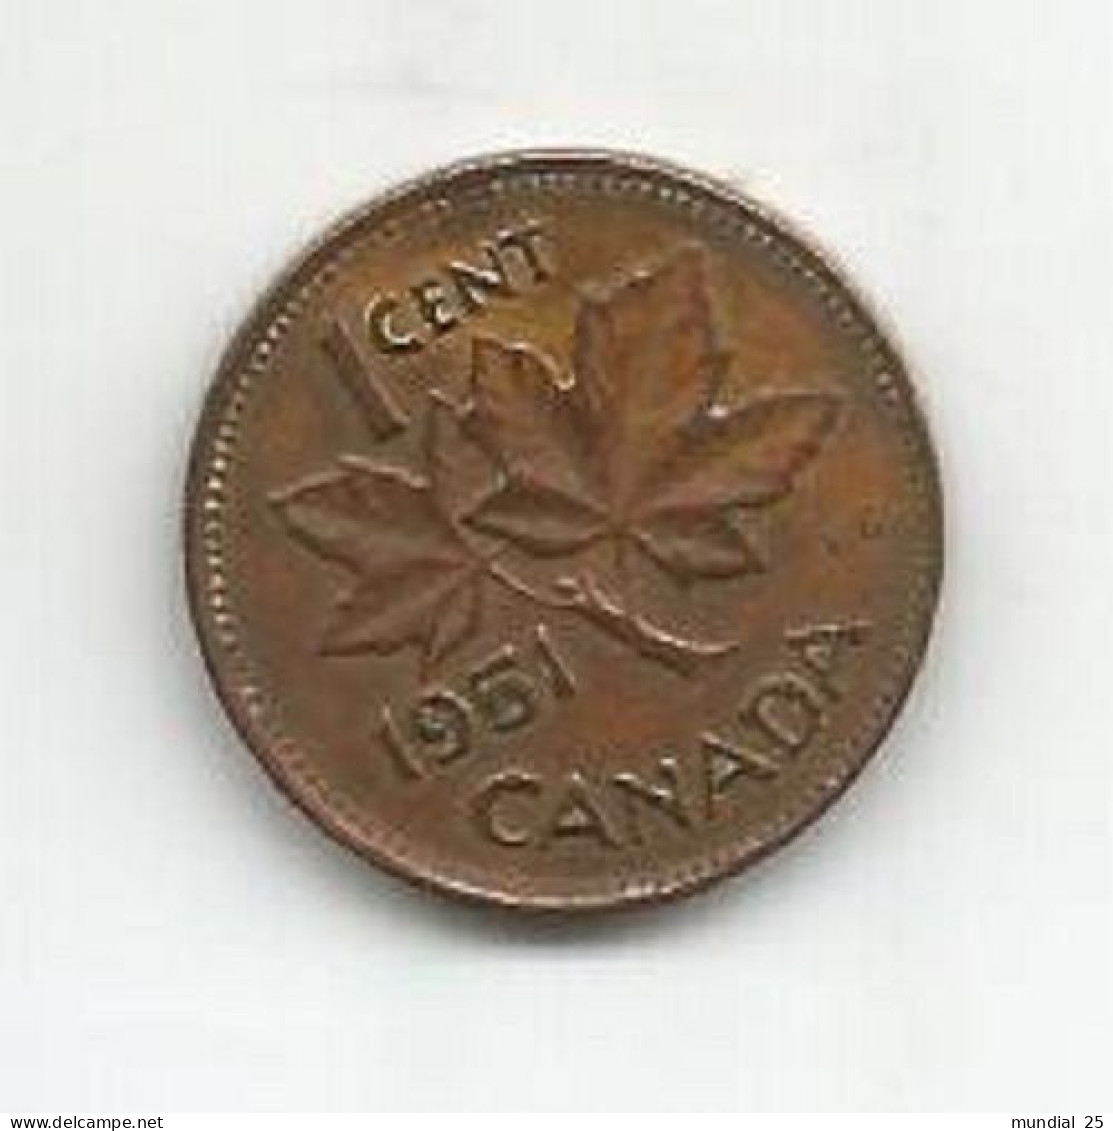 CANADA 1 CENT 1951 - Canada